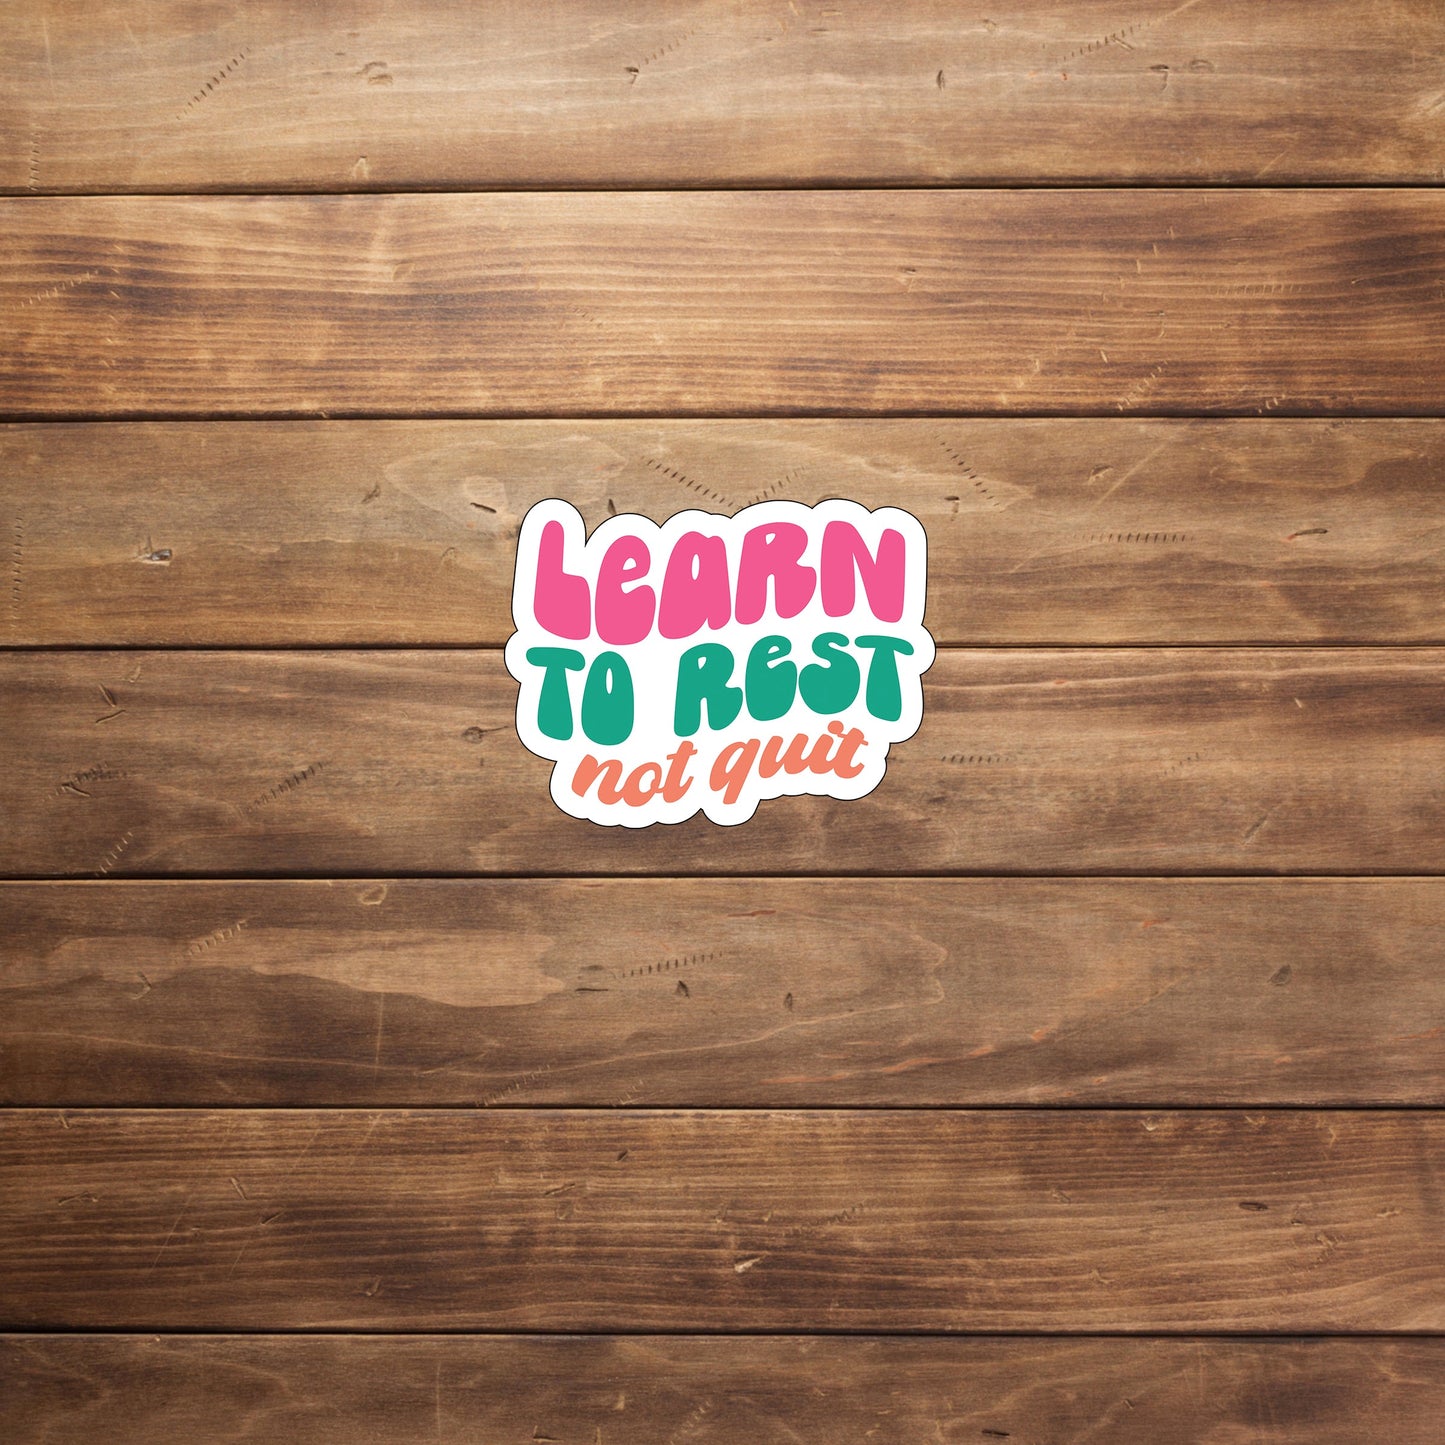 Learn to rest not quit  Sticker,  Vinyl sticker, laptop sticker, Tablet sticker